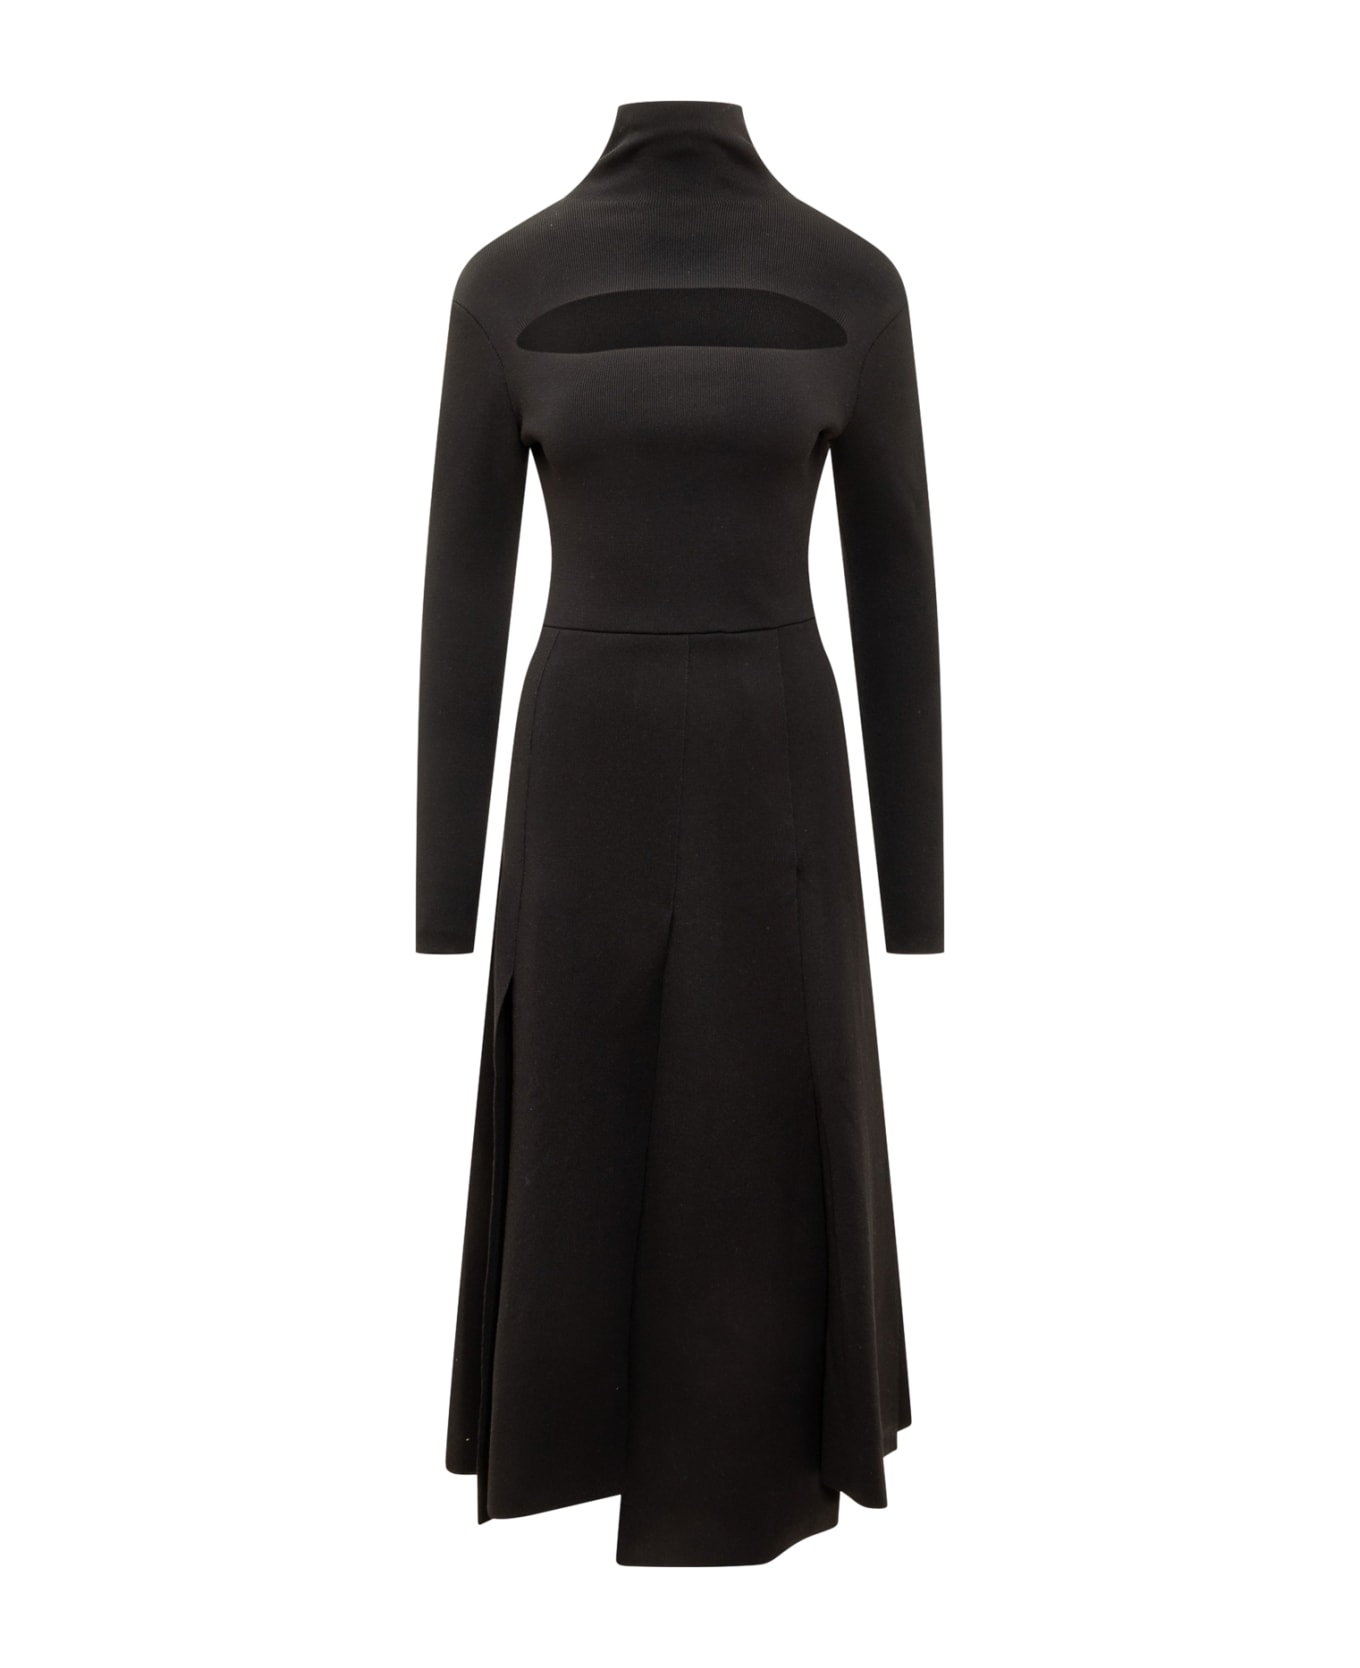 A.W.A.K.E. Mode Knit Dress - BLACK